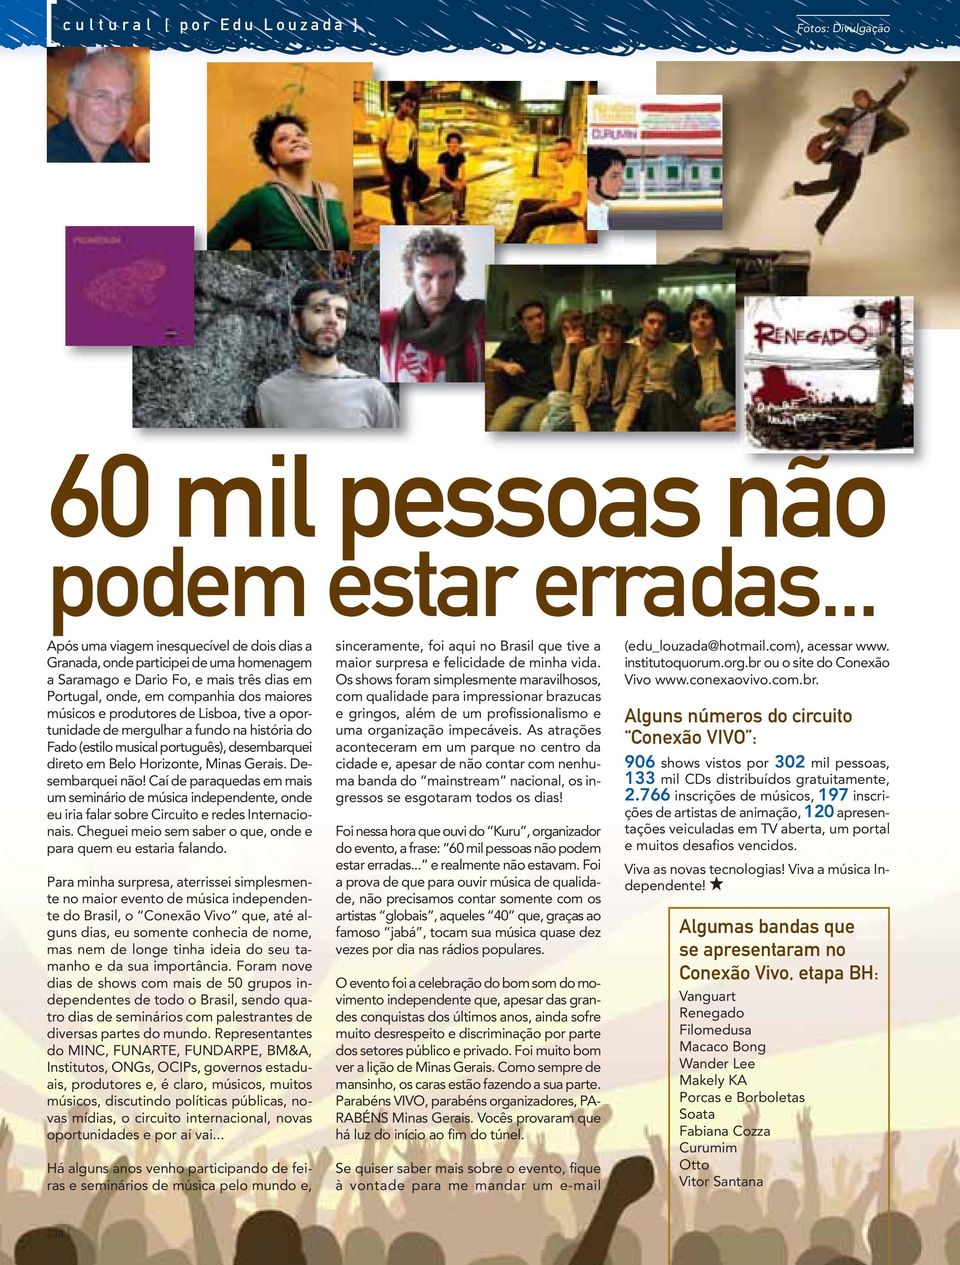 Lisboa, tive a oportunidade de mergulhar a fundo na história do Fado (estilo musical português), desembarquei direto em Belo Horizonte, Minas Gerais. Desembarquei não!